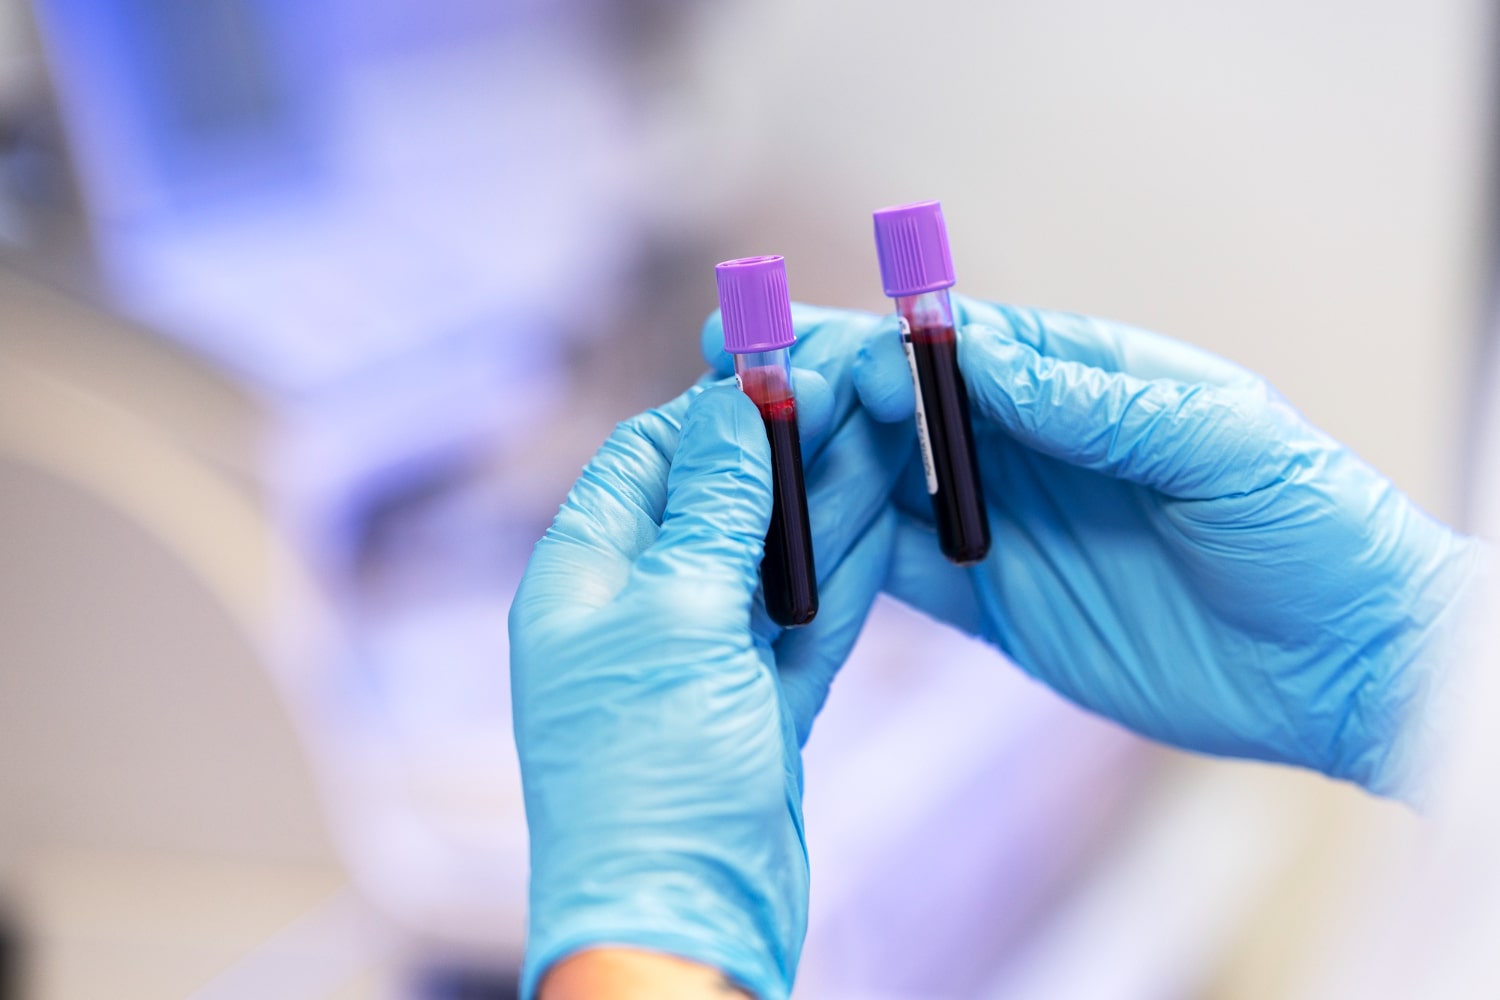 Blood tests could help diagnose Parkinson's